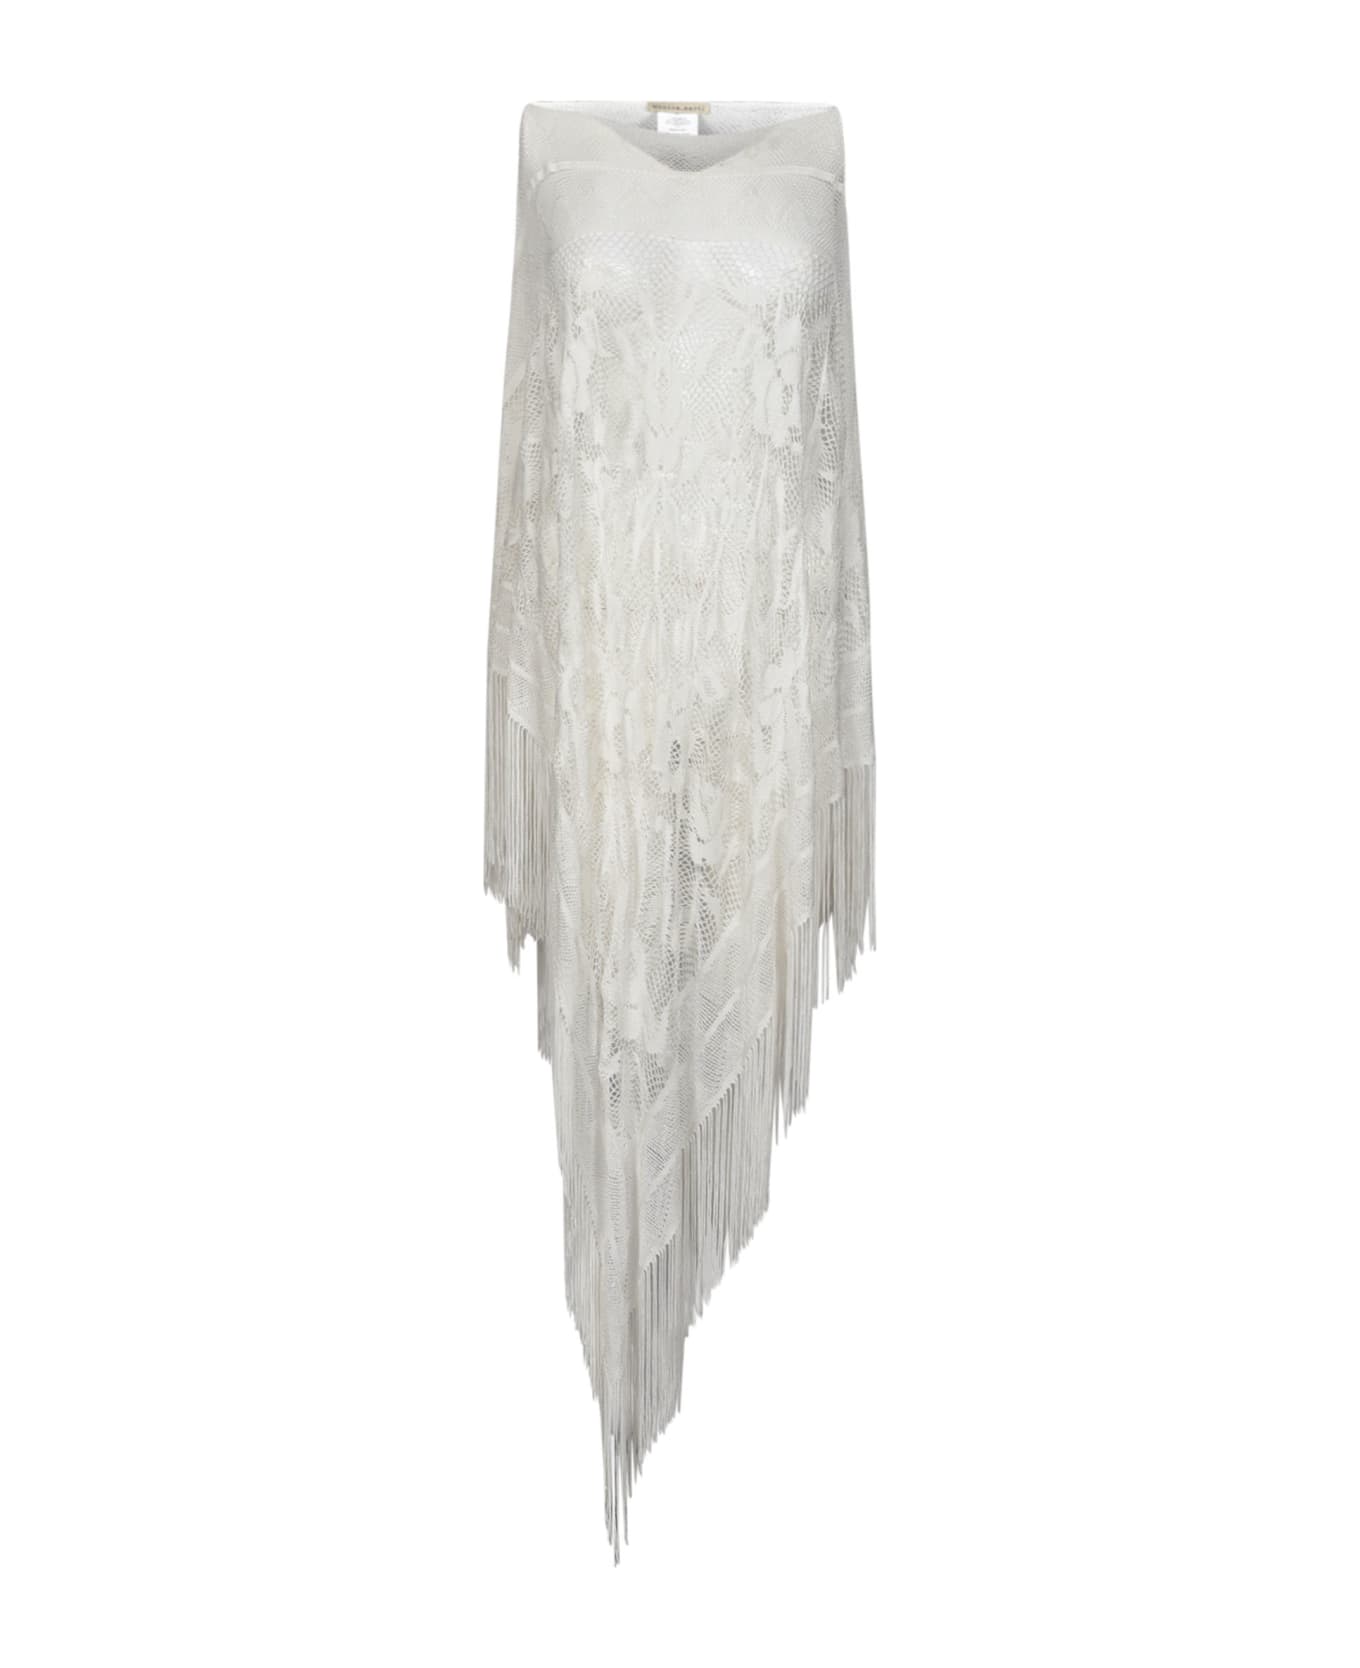 Faliero Sarti Mesh Sleeveless Dress - White